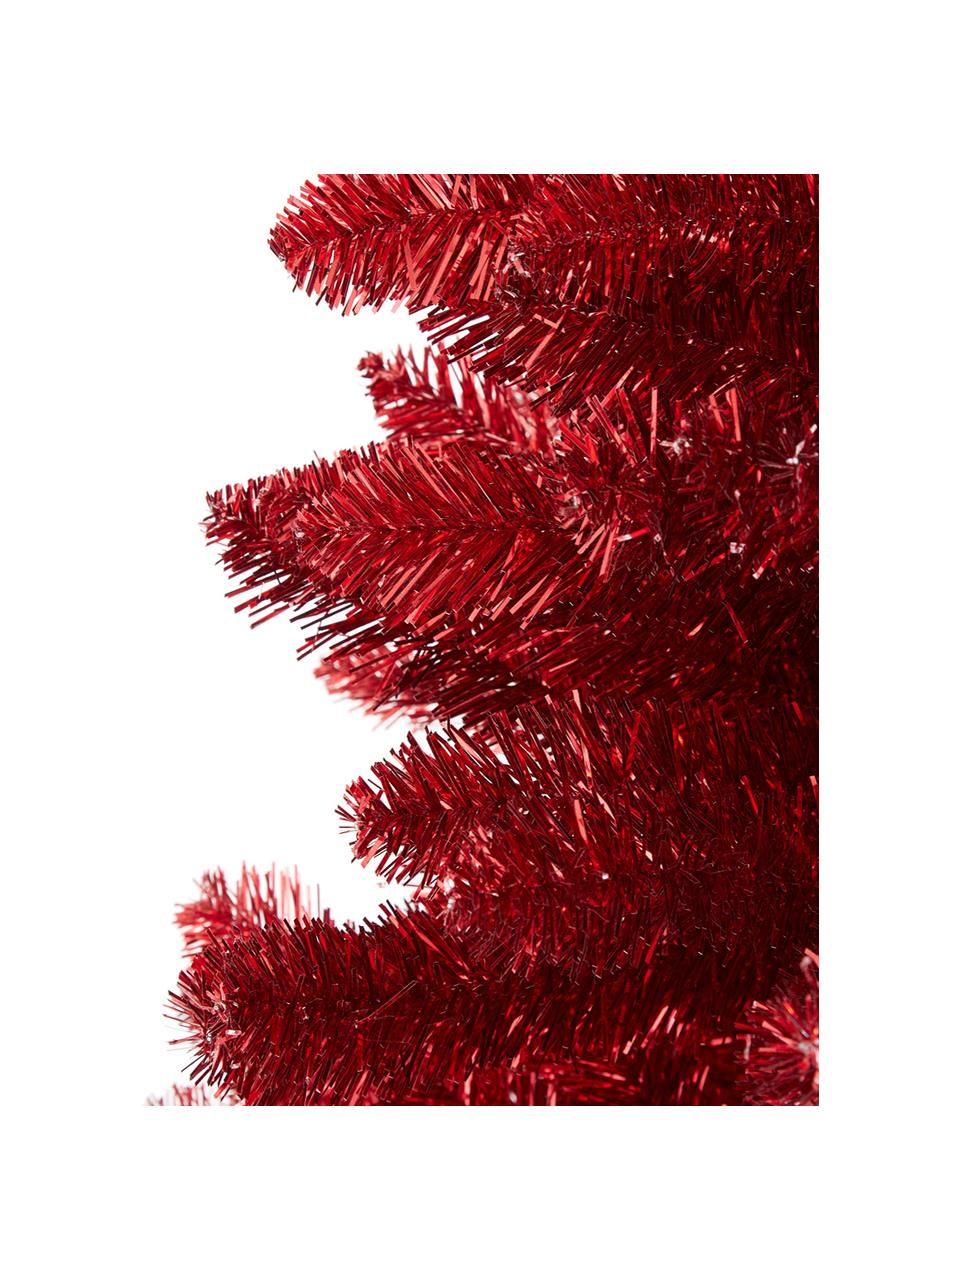 Umělý vánoční stromek Colchester, V 185 cm, Umělá hmota, Červená, Ø 84 cm, V 185 cm